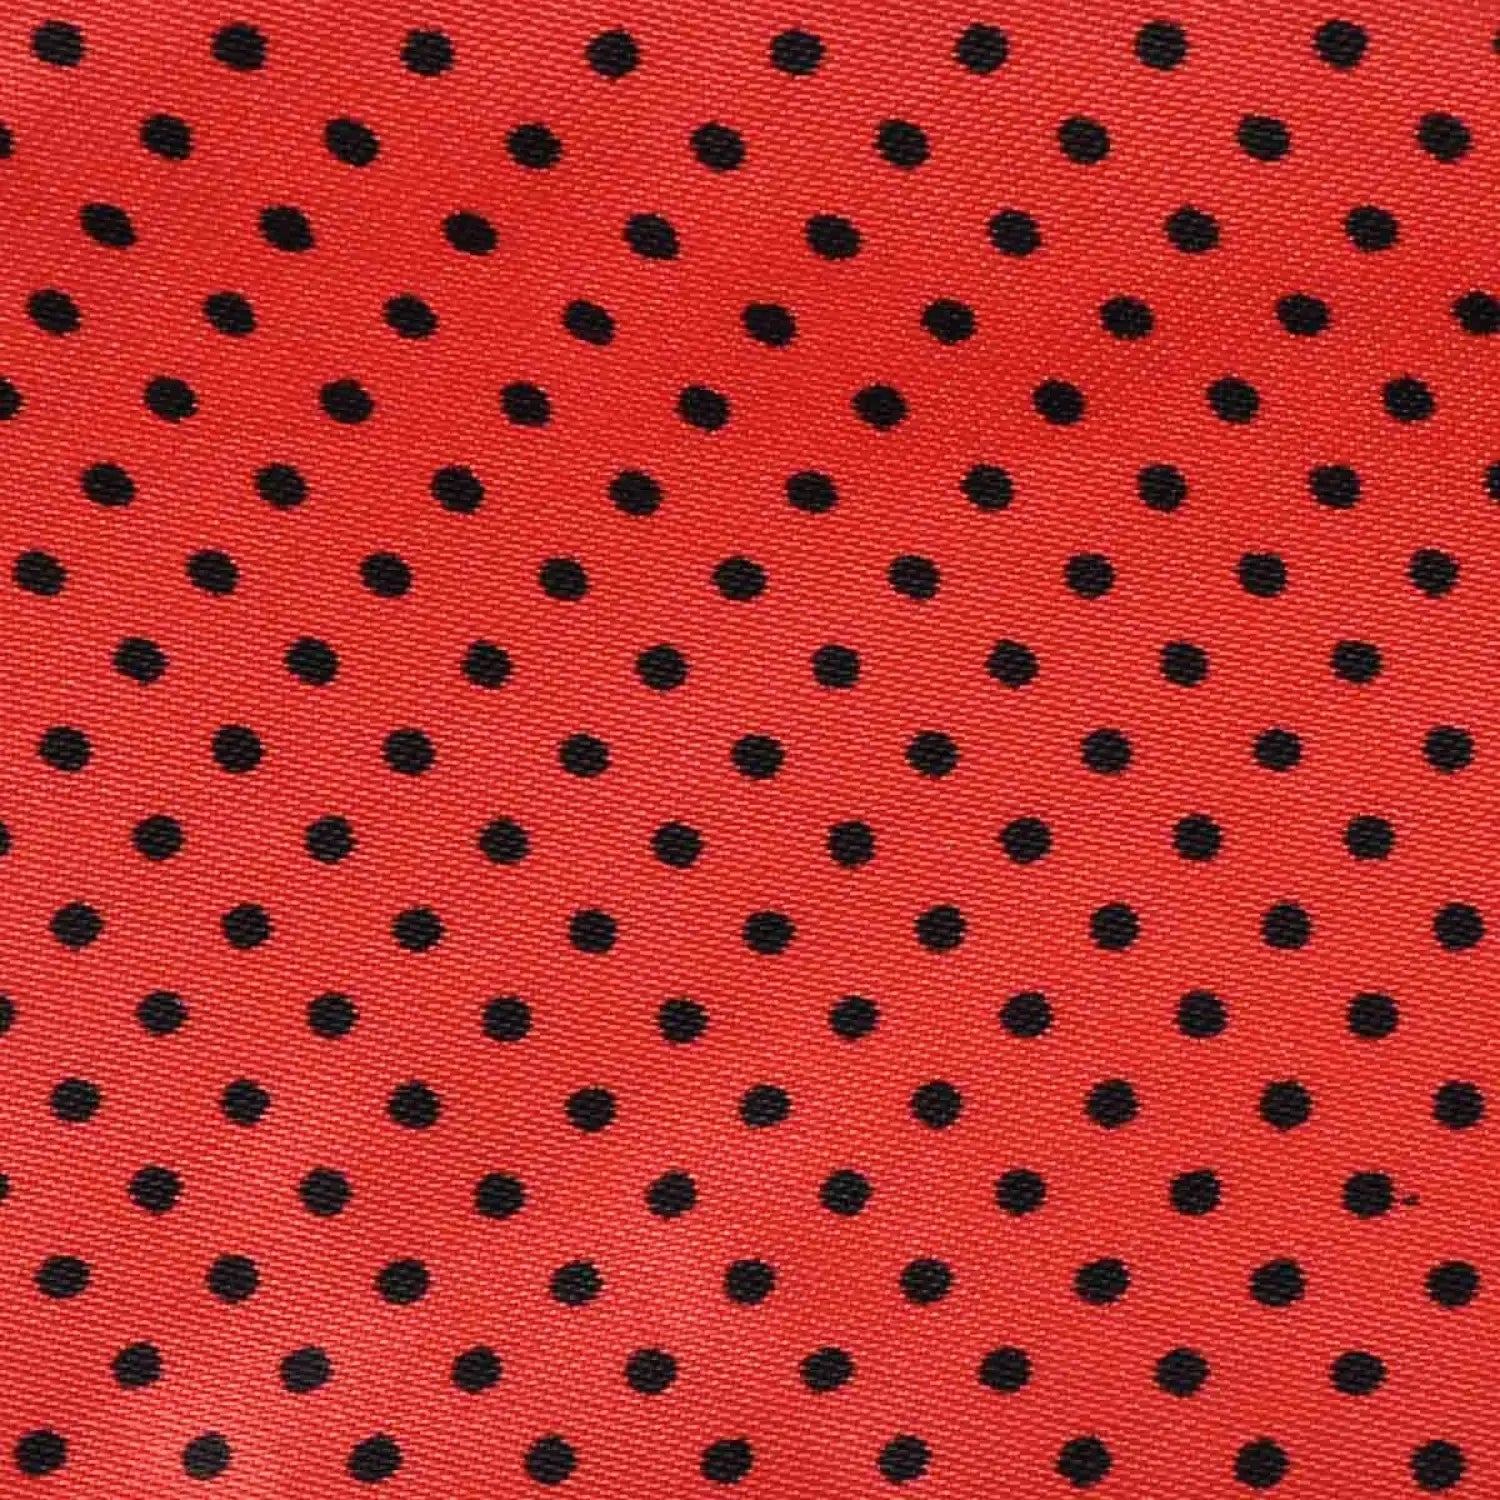 Red and black polka dot satin sash scarf and matching hair pin set fabric.